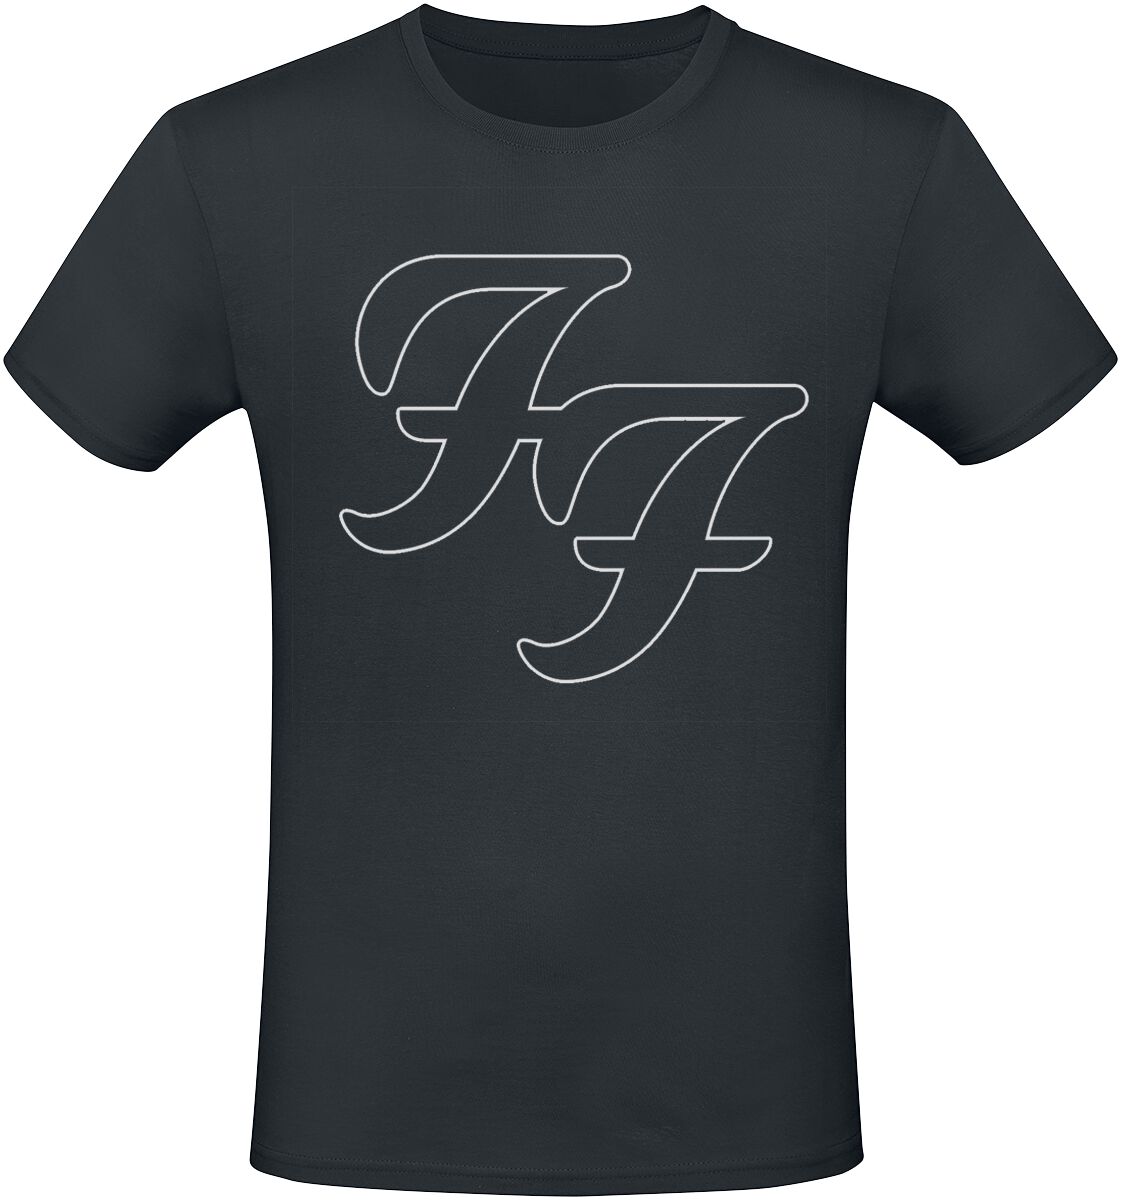 Foo Fighters T-Shirt - But Here We Are - S bis 3XL - für Männer - Größe XL - schwarz  - Lizenziertes Merchandise!